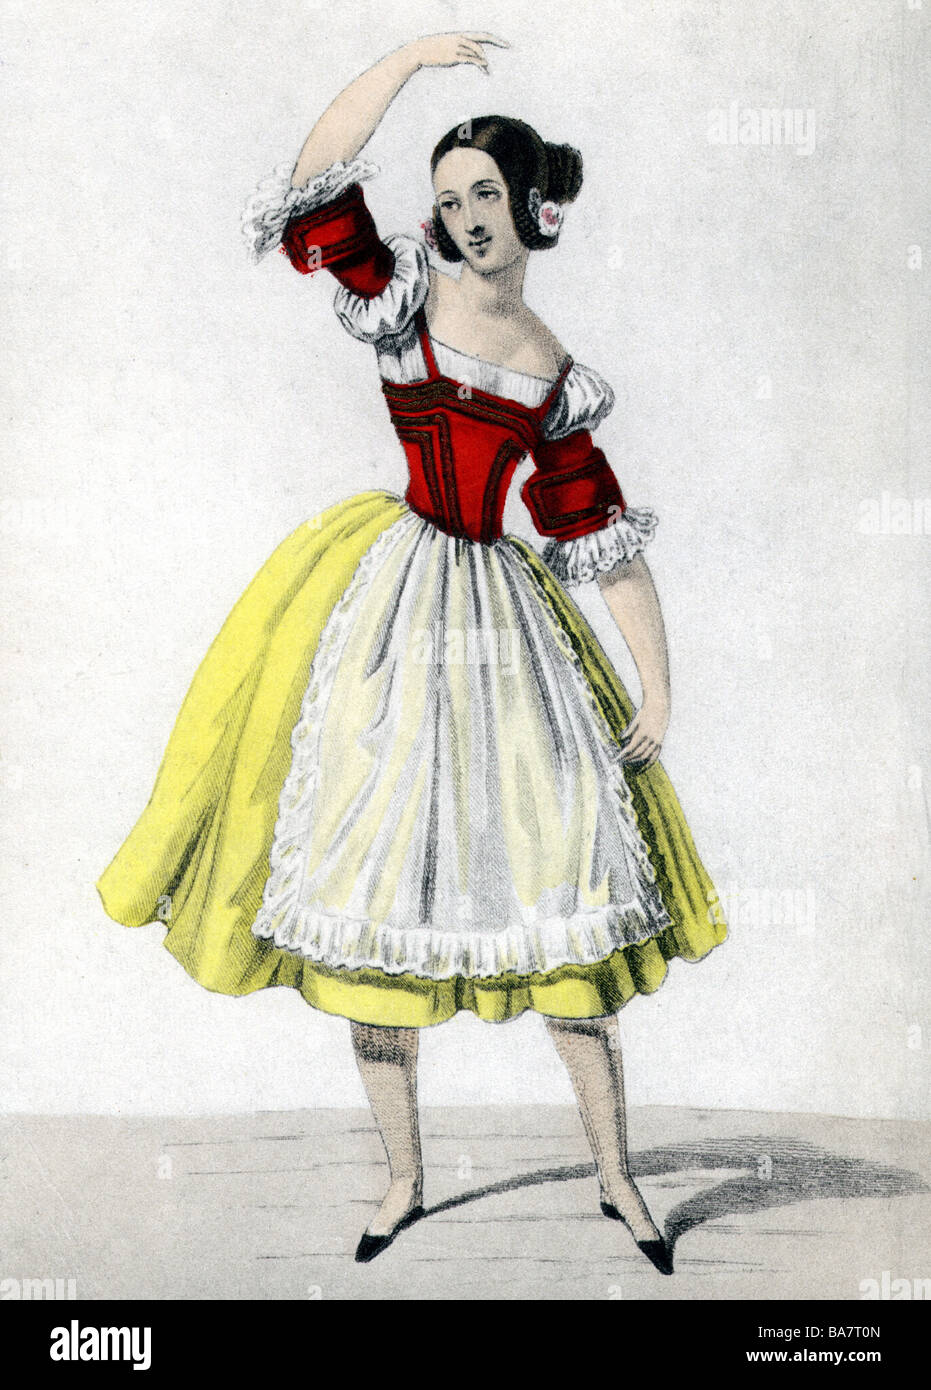 Elssler, Fanny, 23.10.1810 - 27.11.1884, ballerine Autrichien, pleine  longueur, la danse contemporaine de couleur, gravure sur cuivre, 19e  siècle, l'artiste n'a pas d'auteur pour être effacé Photo Stock - Alamy